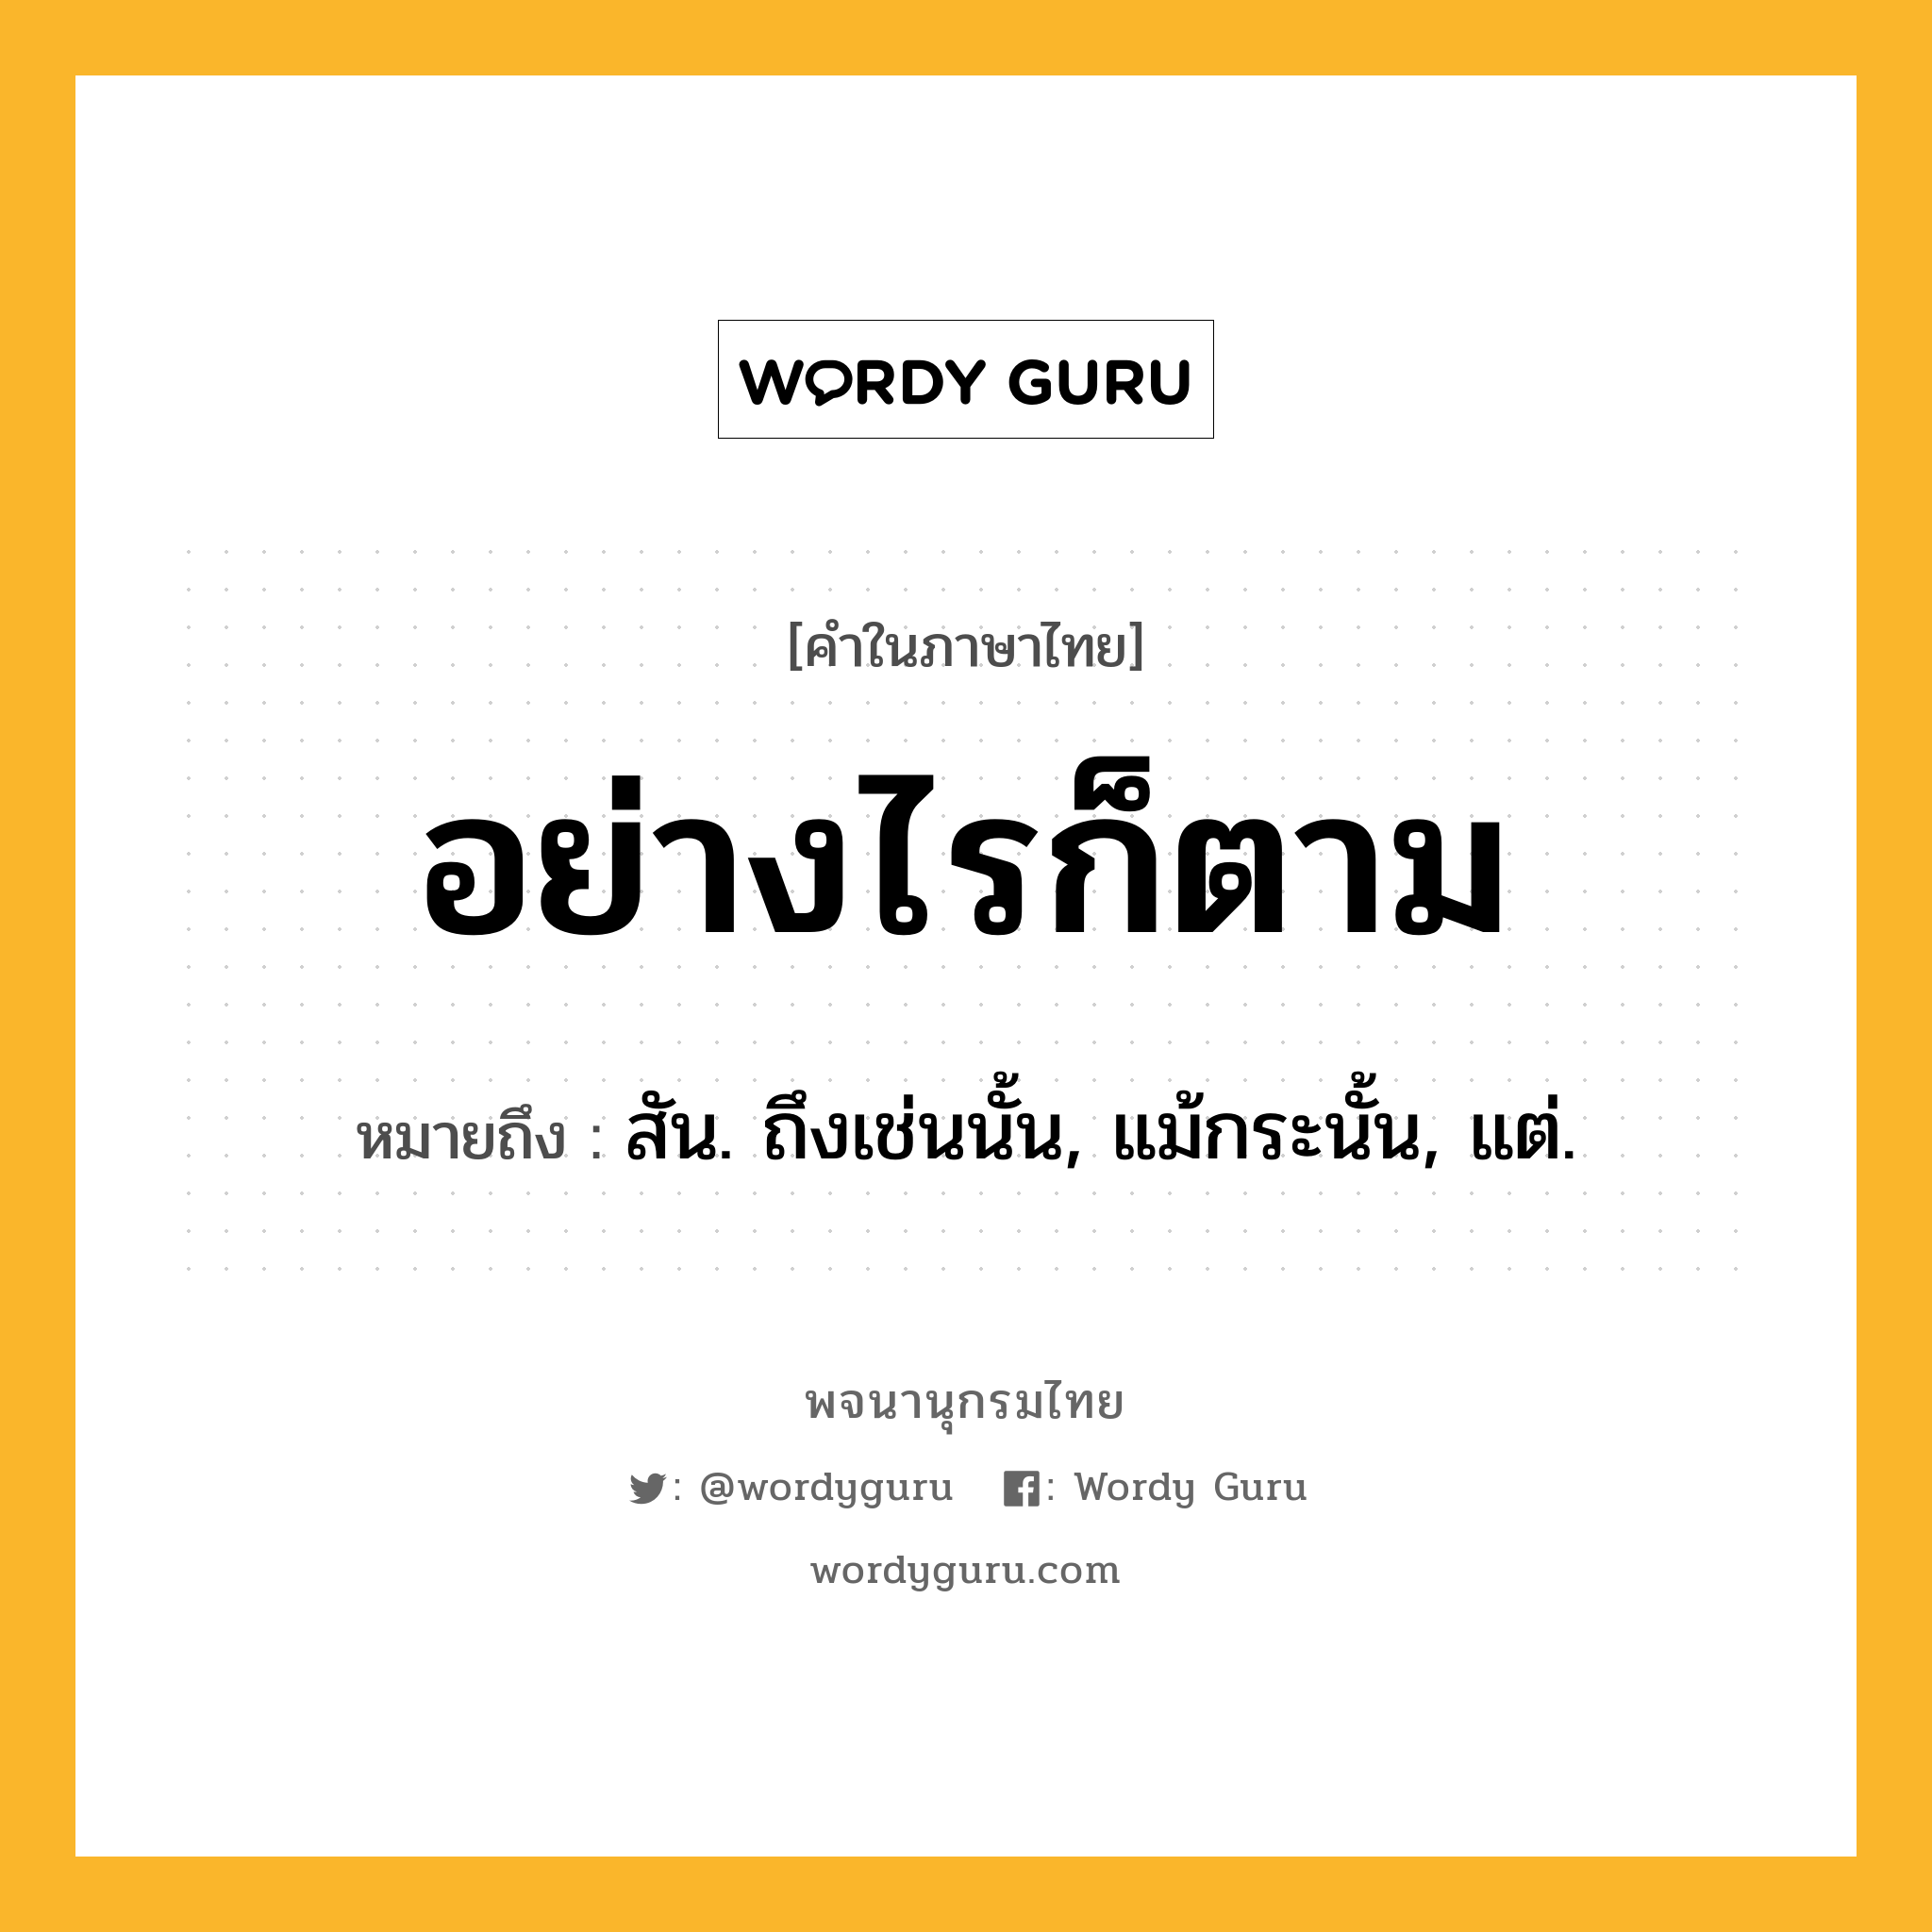 อย่างไรก็ตาม ความหมาย หมายถึงอะไร?, คำในภาษาไทย อย่างไรก็ตาม หมายถึง สัน. ถึงเช่นนั้น, แม้กระนั้น, แต่.